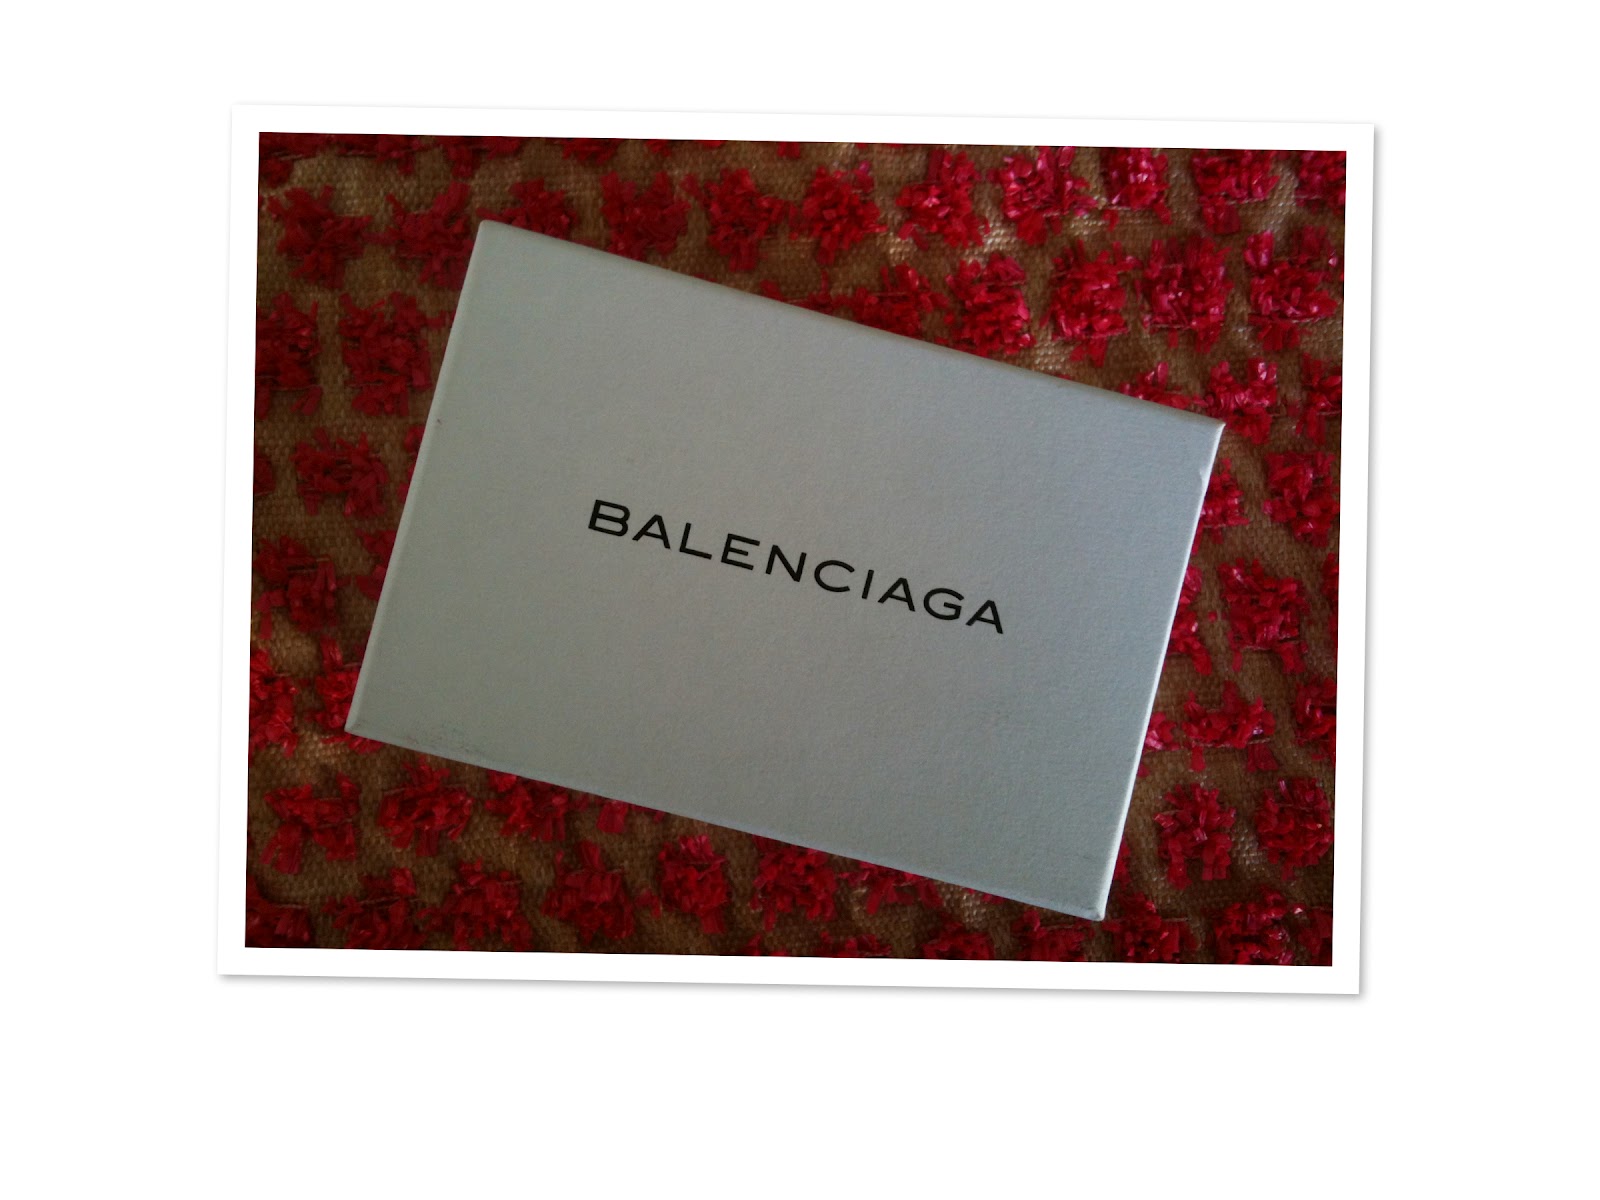 Show & Tell Balenciaga | Stilista at Home